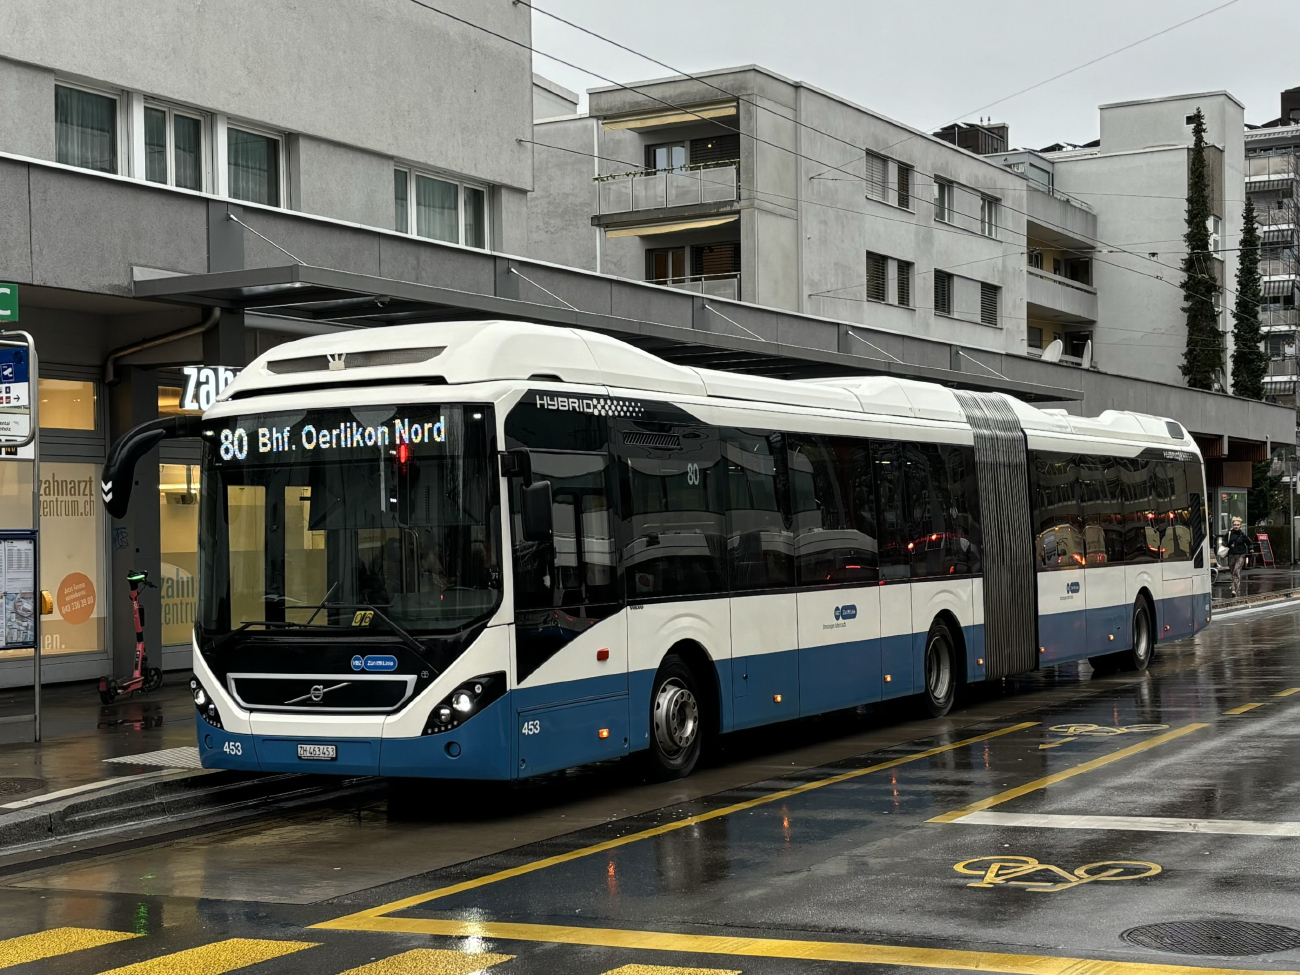 Zurich, Volvo 7900A Hybrid # 453